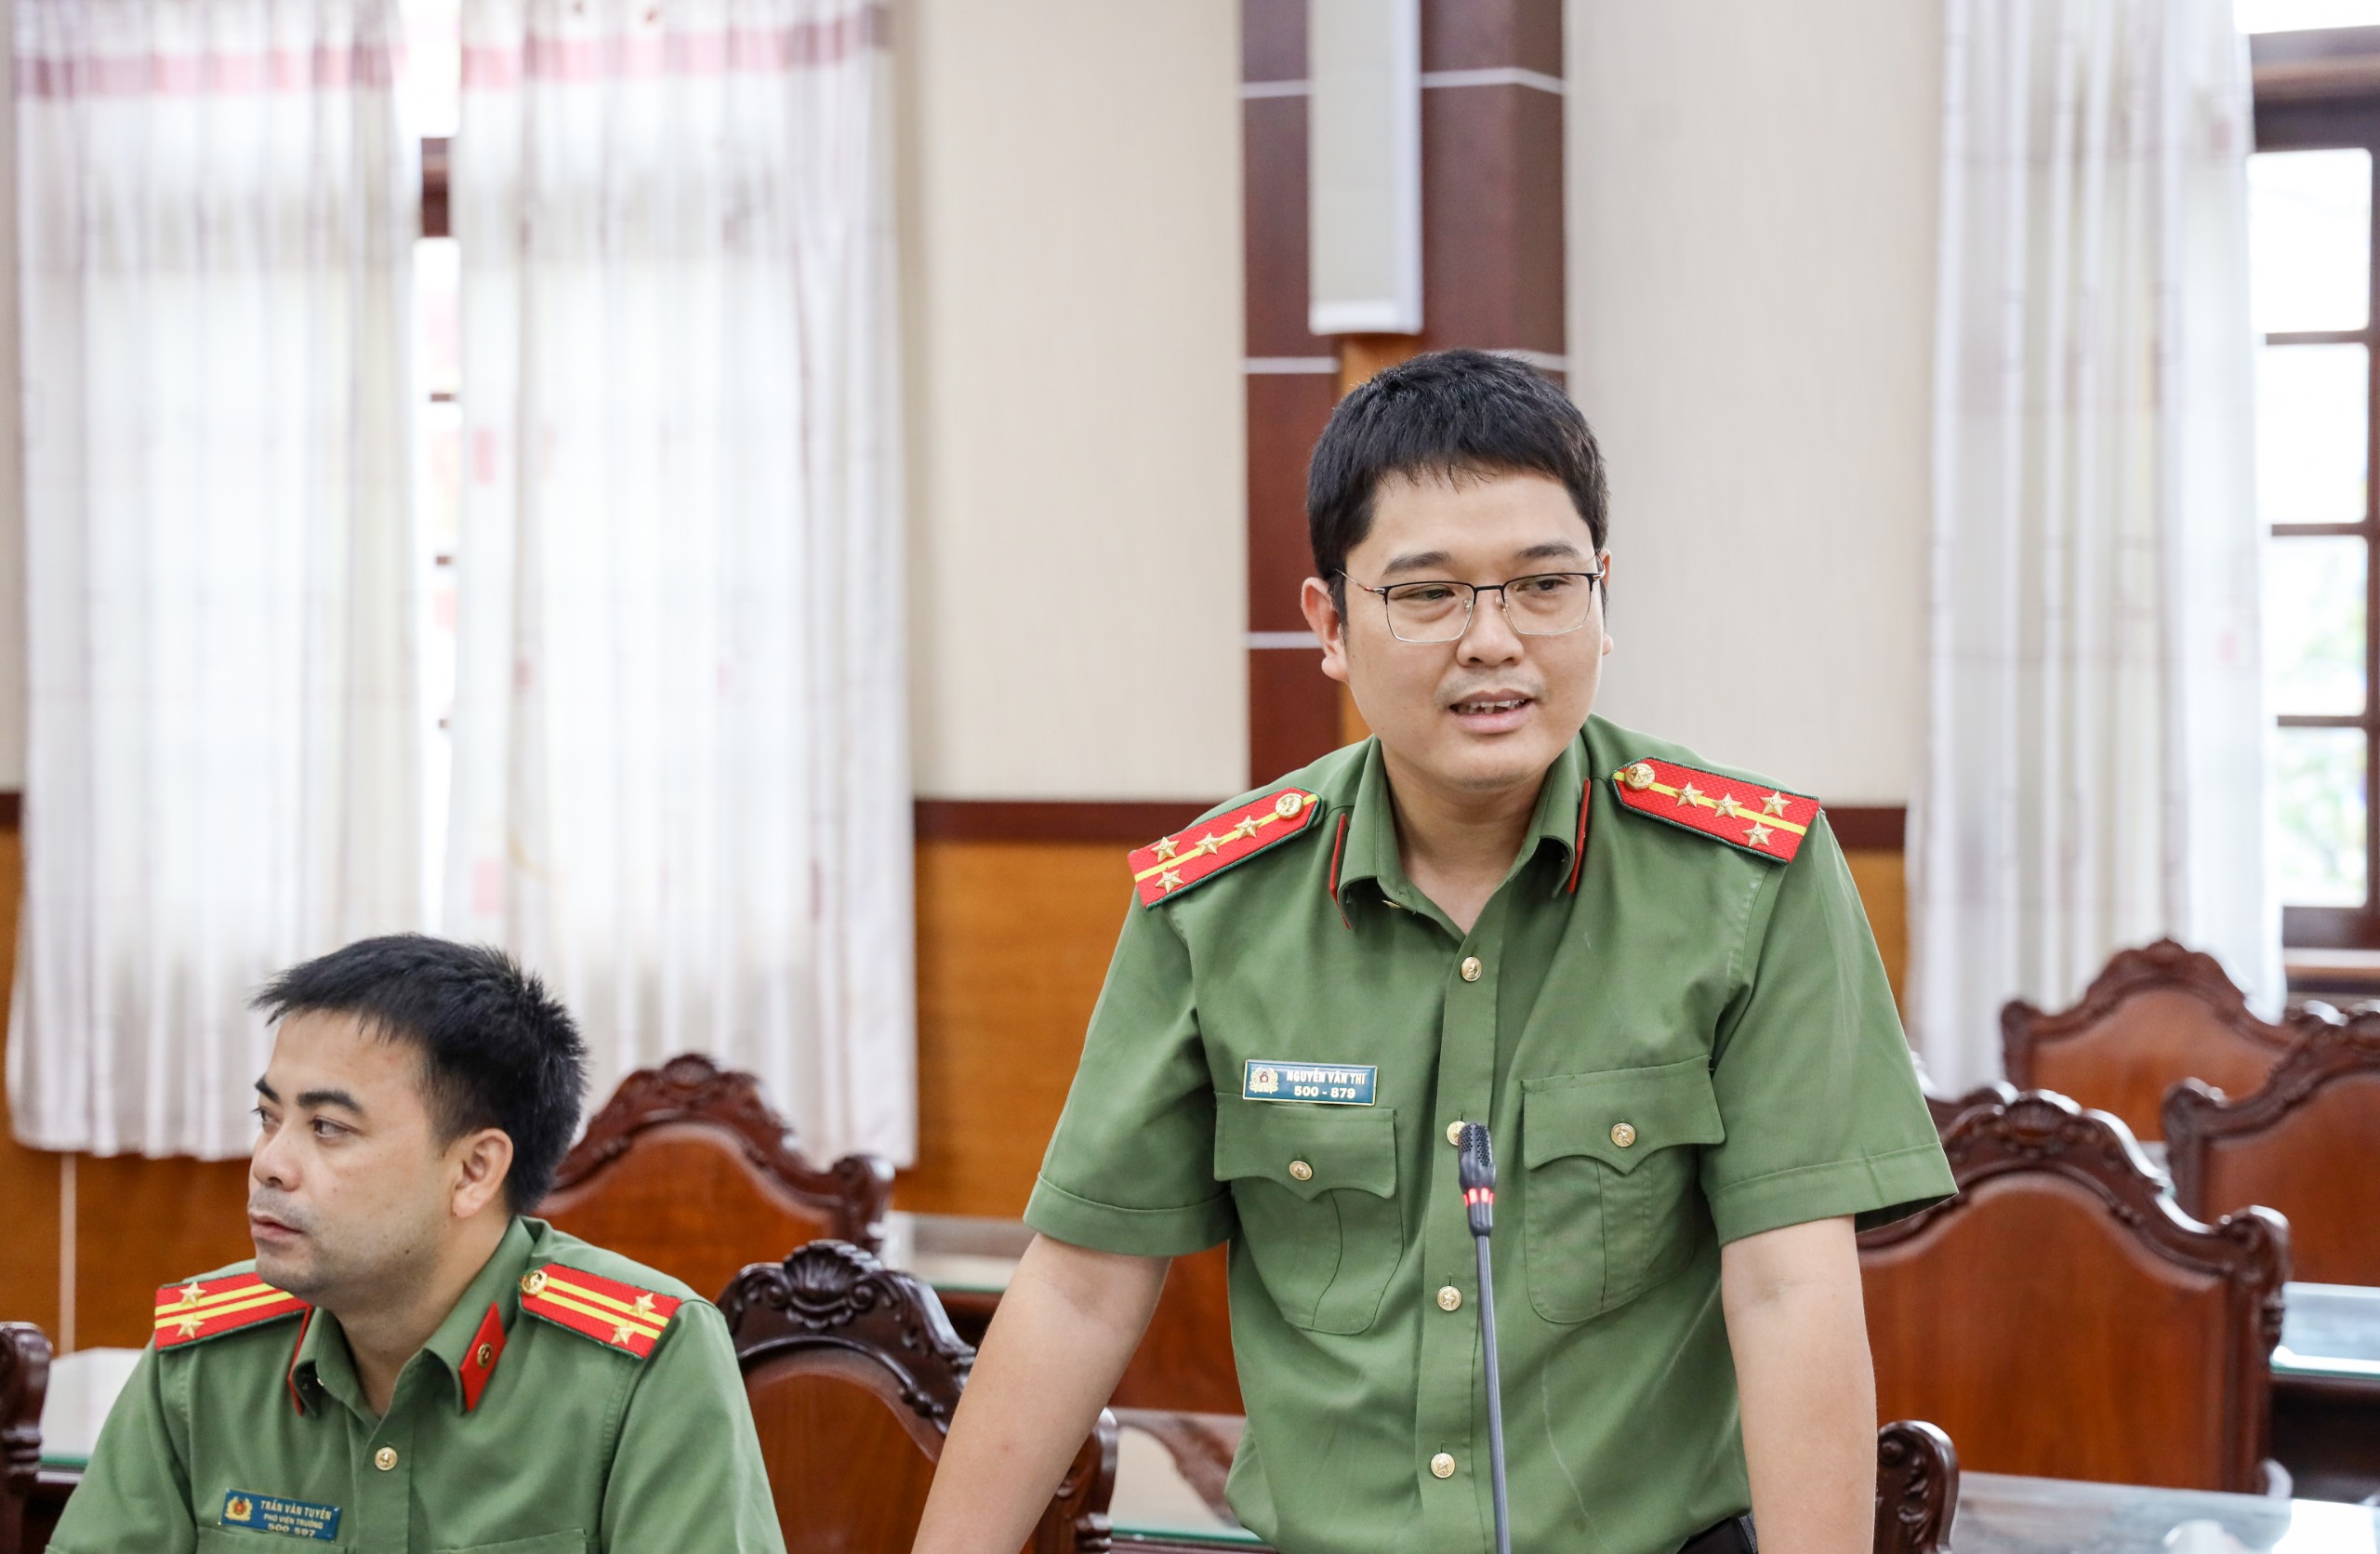 Đại úy Nguyễn Văn Thi, thành viên Ban chủ nhiệm đề tài đóng góp ý kiến bổ sung, hoàn thiện bản thảo đề tài.